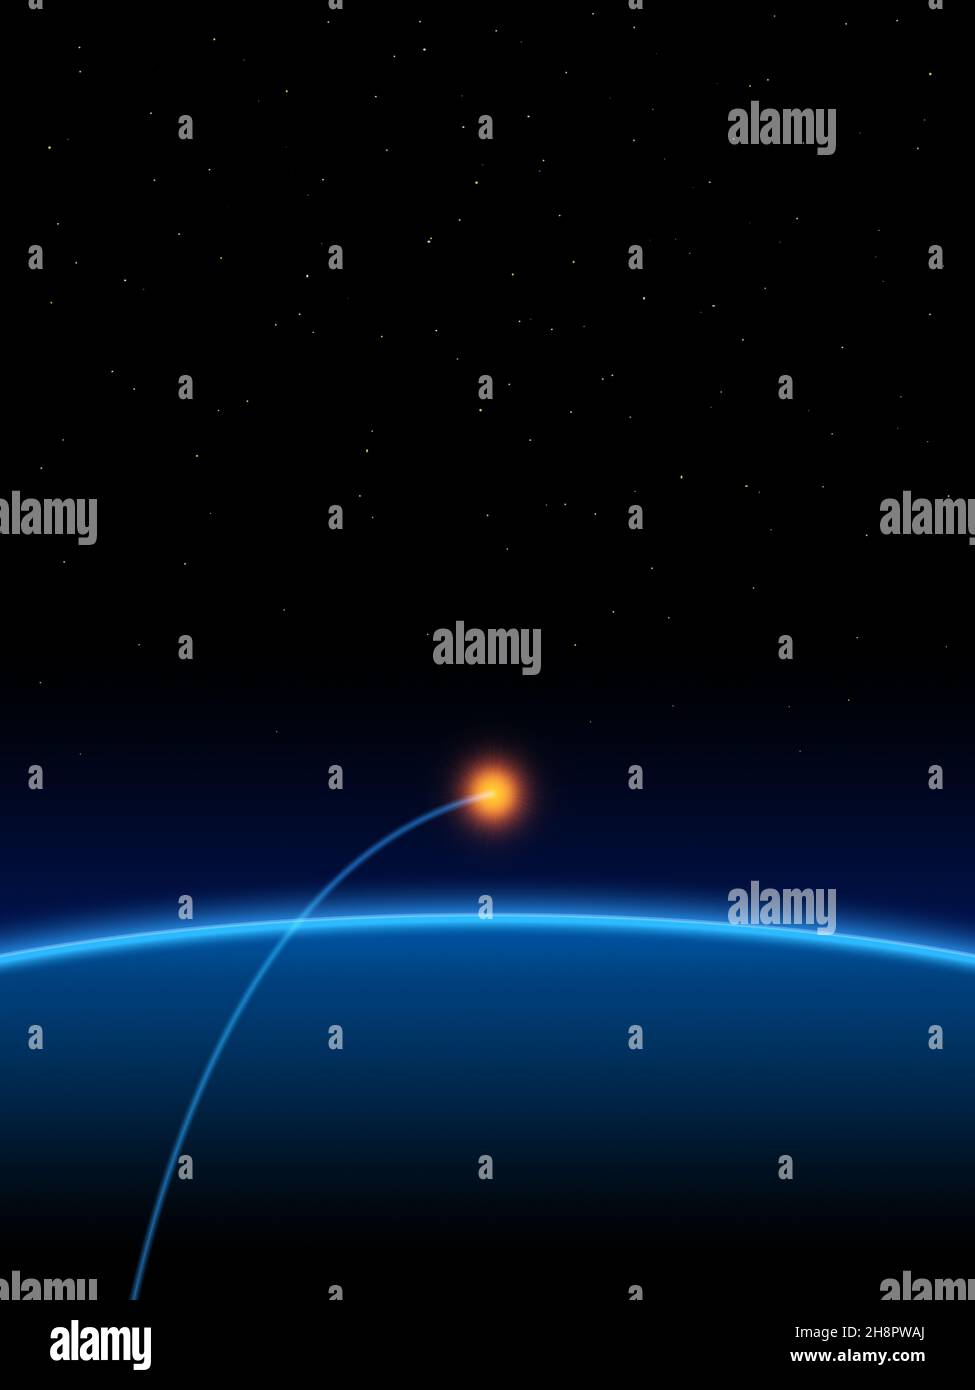 Eine bläuliche Linie mit einem glühenden Strahl, der im Weltraum über einem Planeten kreist - Illustration Stockfoto